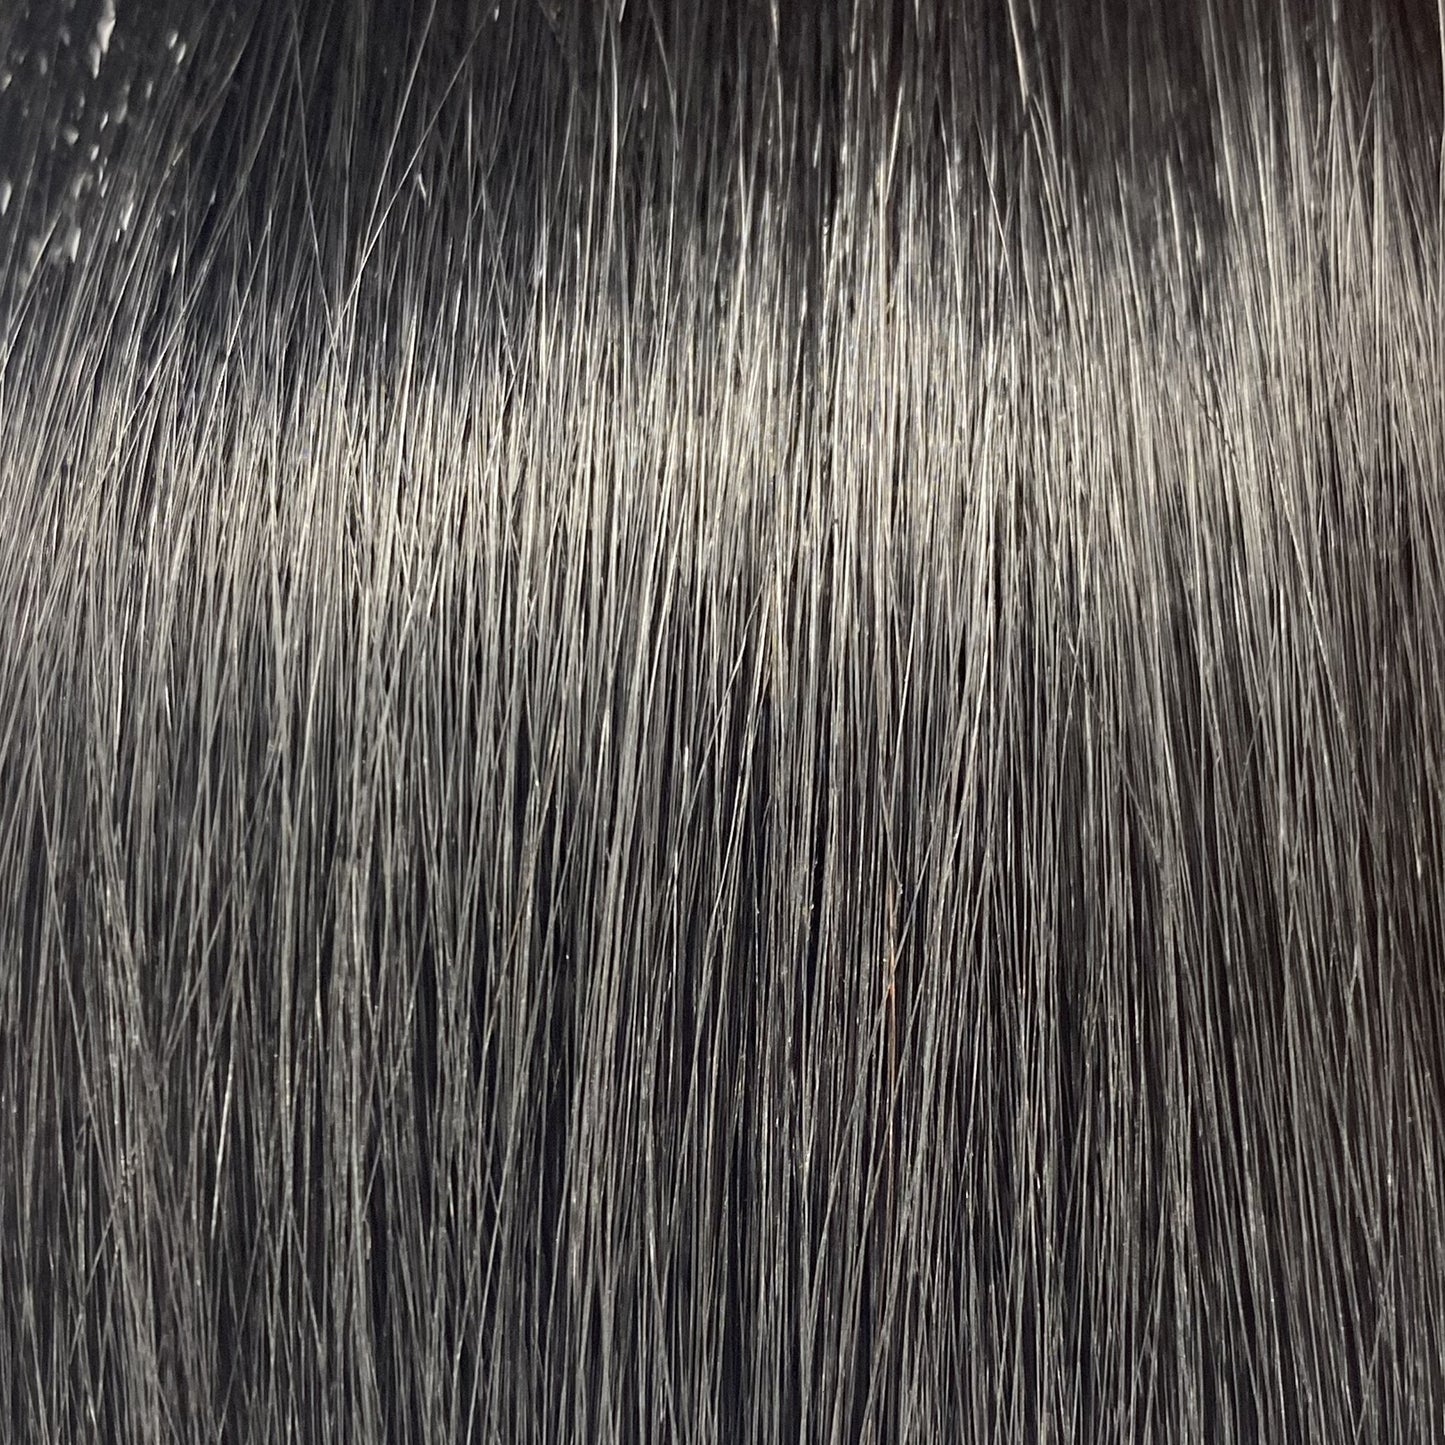 Fusion hair extensions #1B - 40cm/16 inches - Black Fusion Euro So Cap 